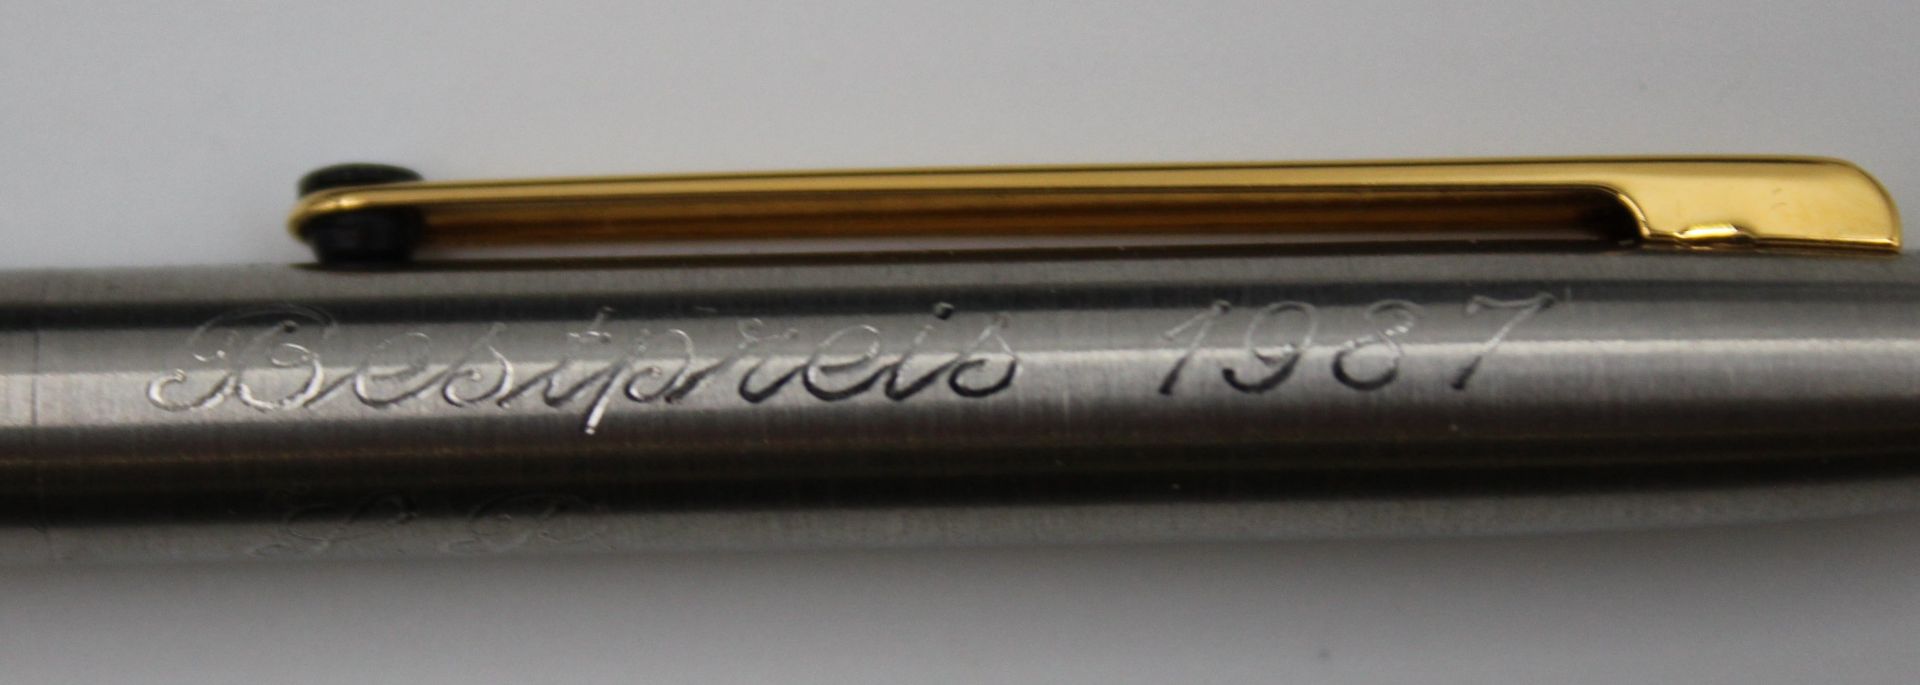 Kugelschreiber, Montblanc, in Etui, Gravur und datiert  1987 - Bild 2 aus 6